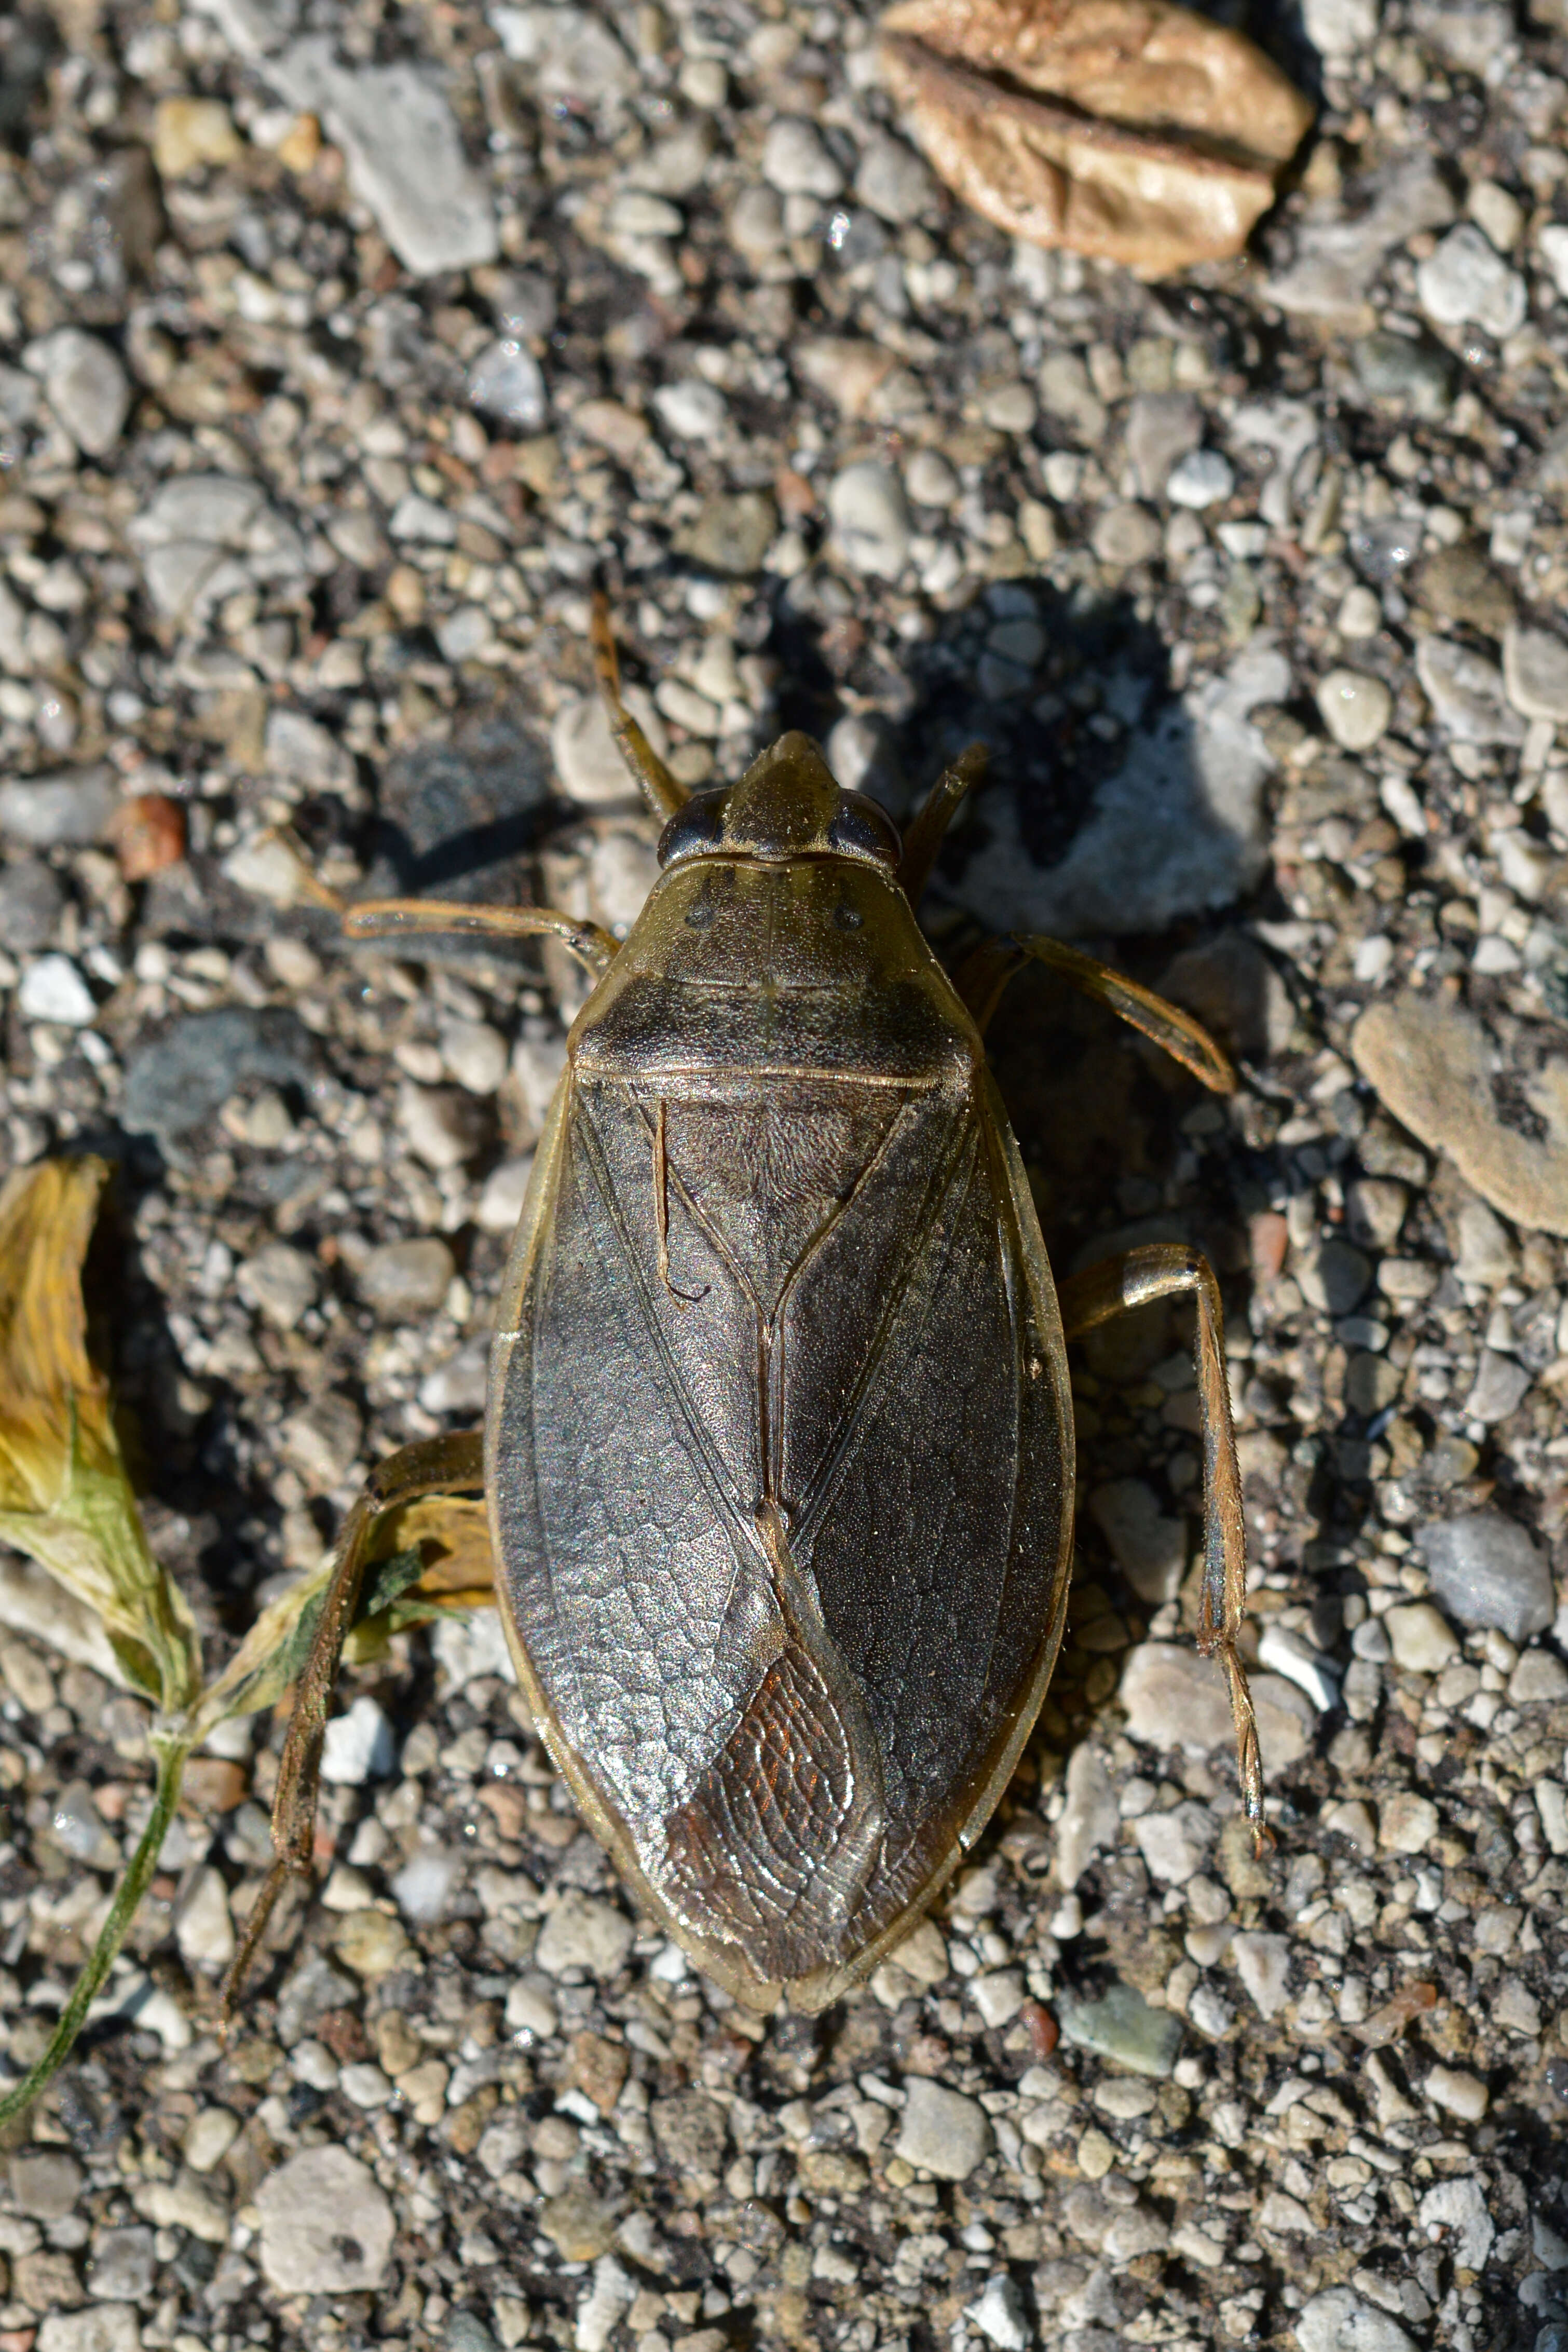 Image of giant water bug